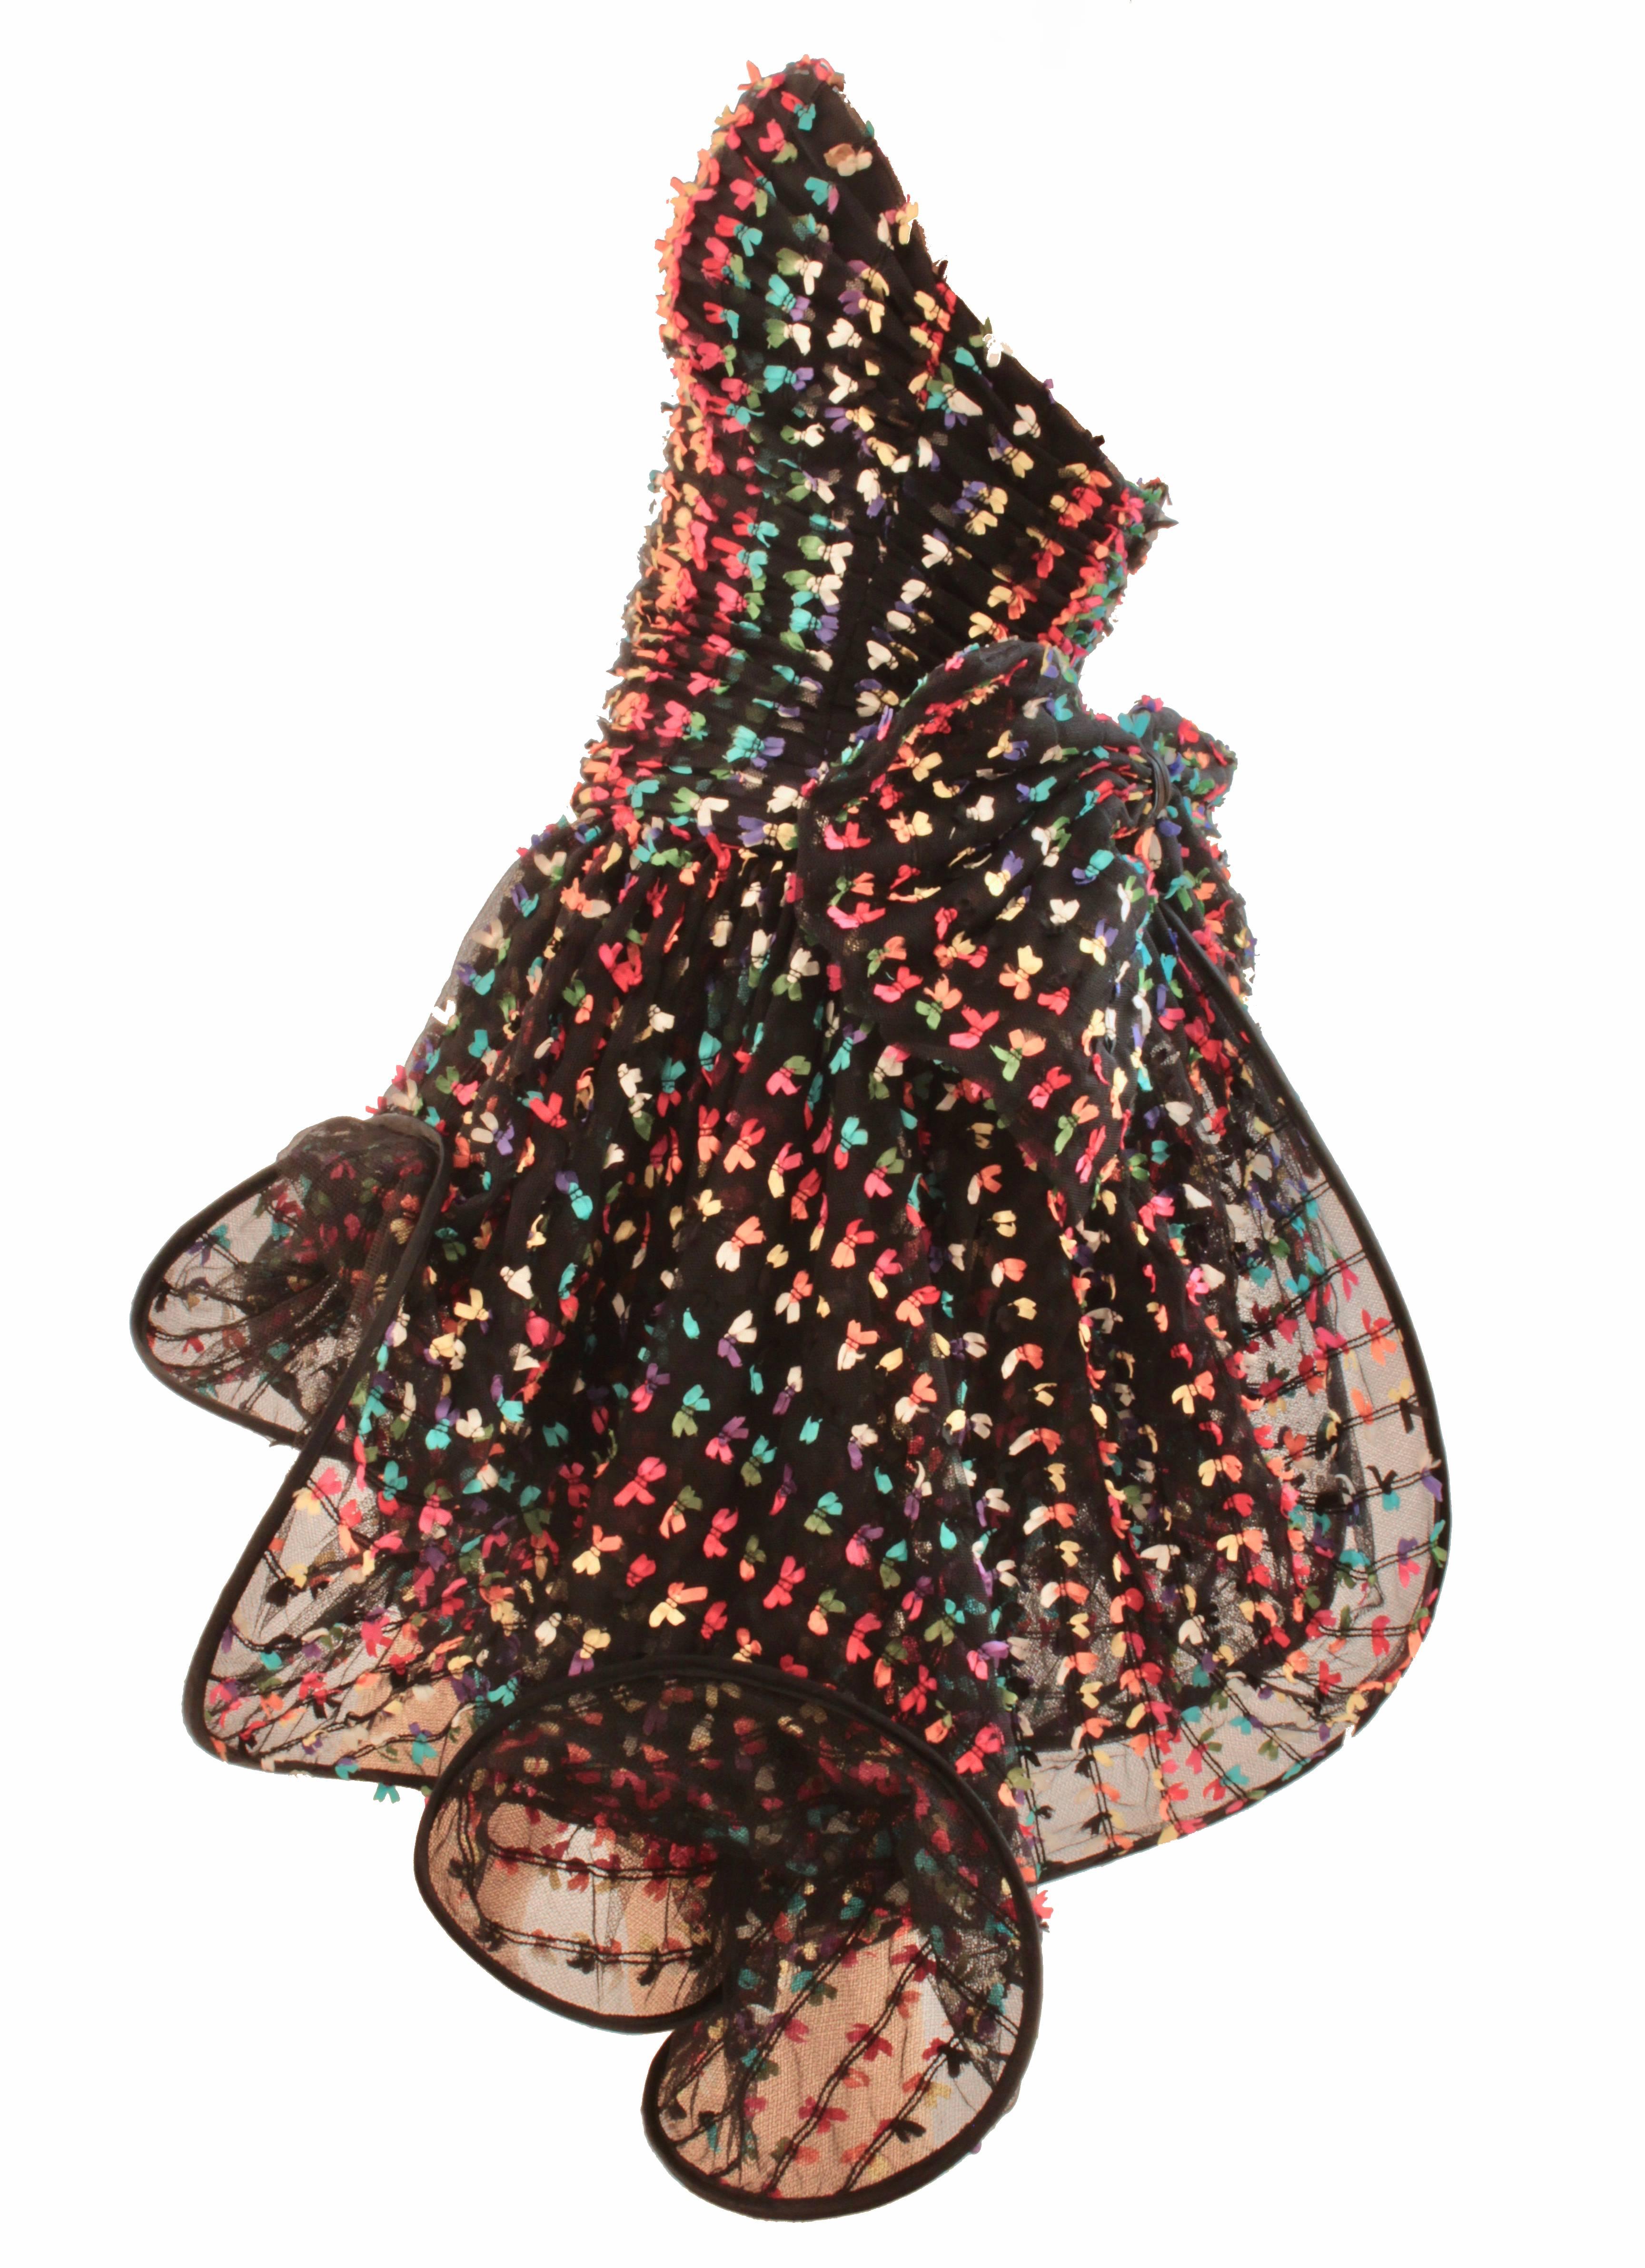 Women's Unique Confetti Bow Cocktail Dress by Tomasz Starzewski Bergdorf Goodman 6 90s